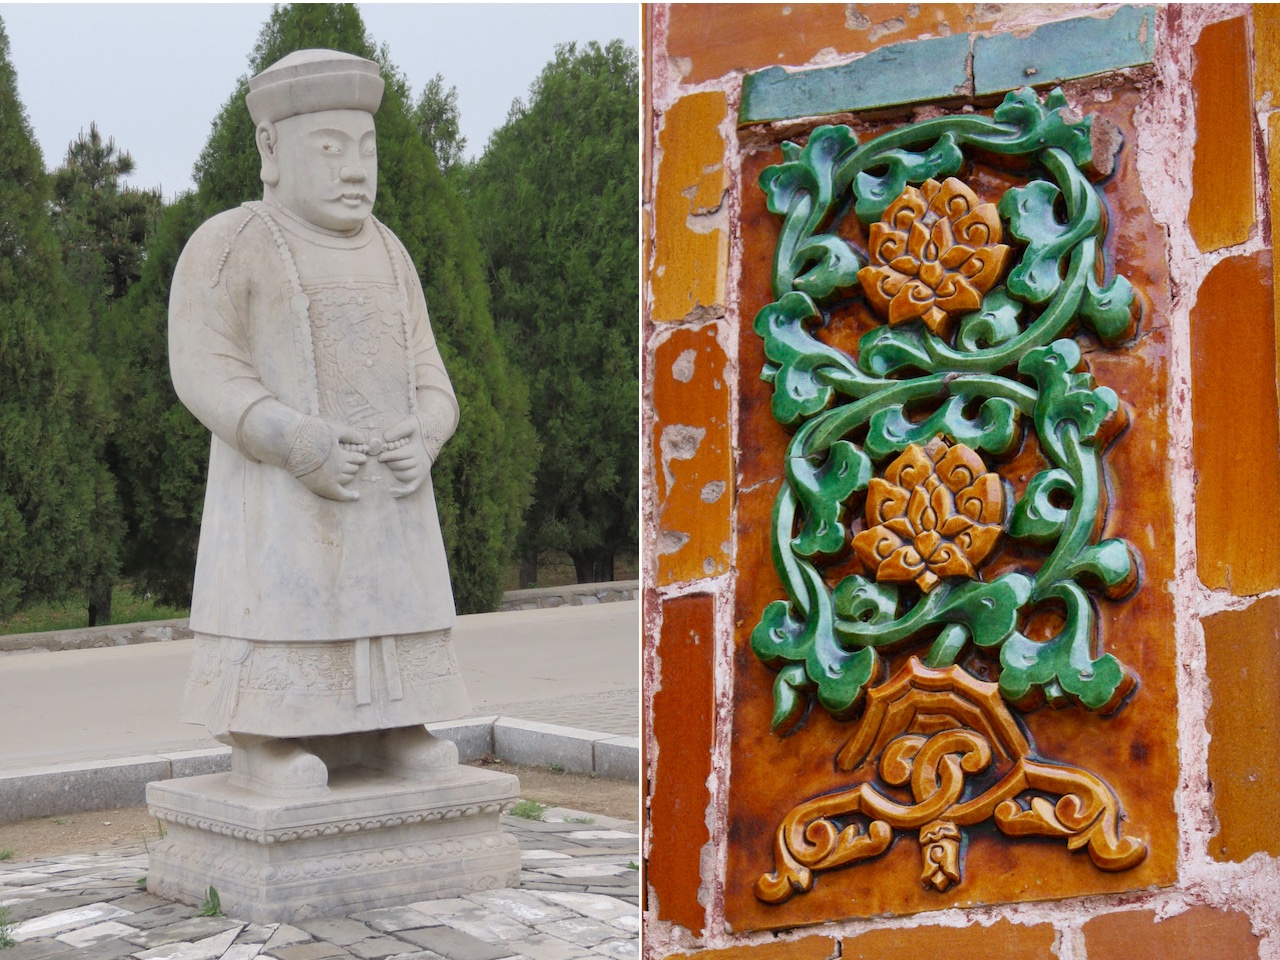 Eastern Qing Tombs